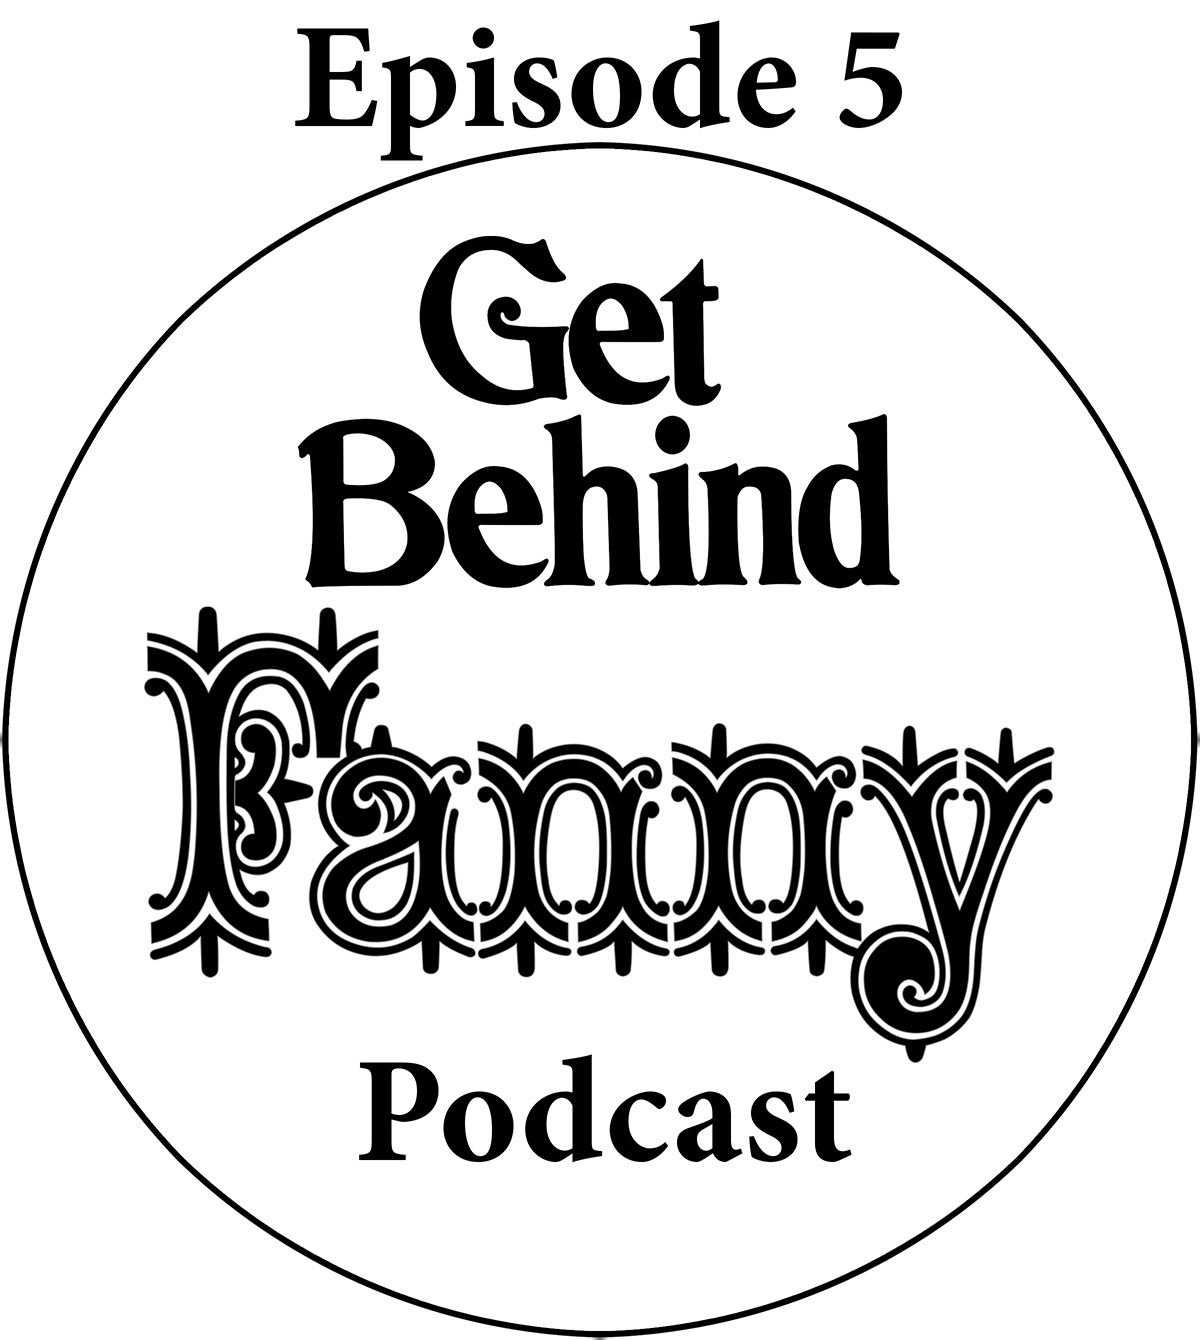 Get Behind Fanny: Episode 5